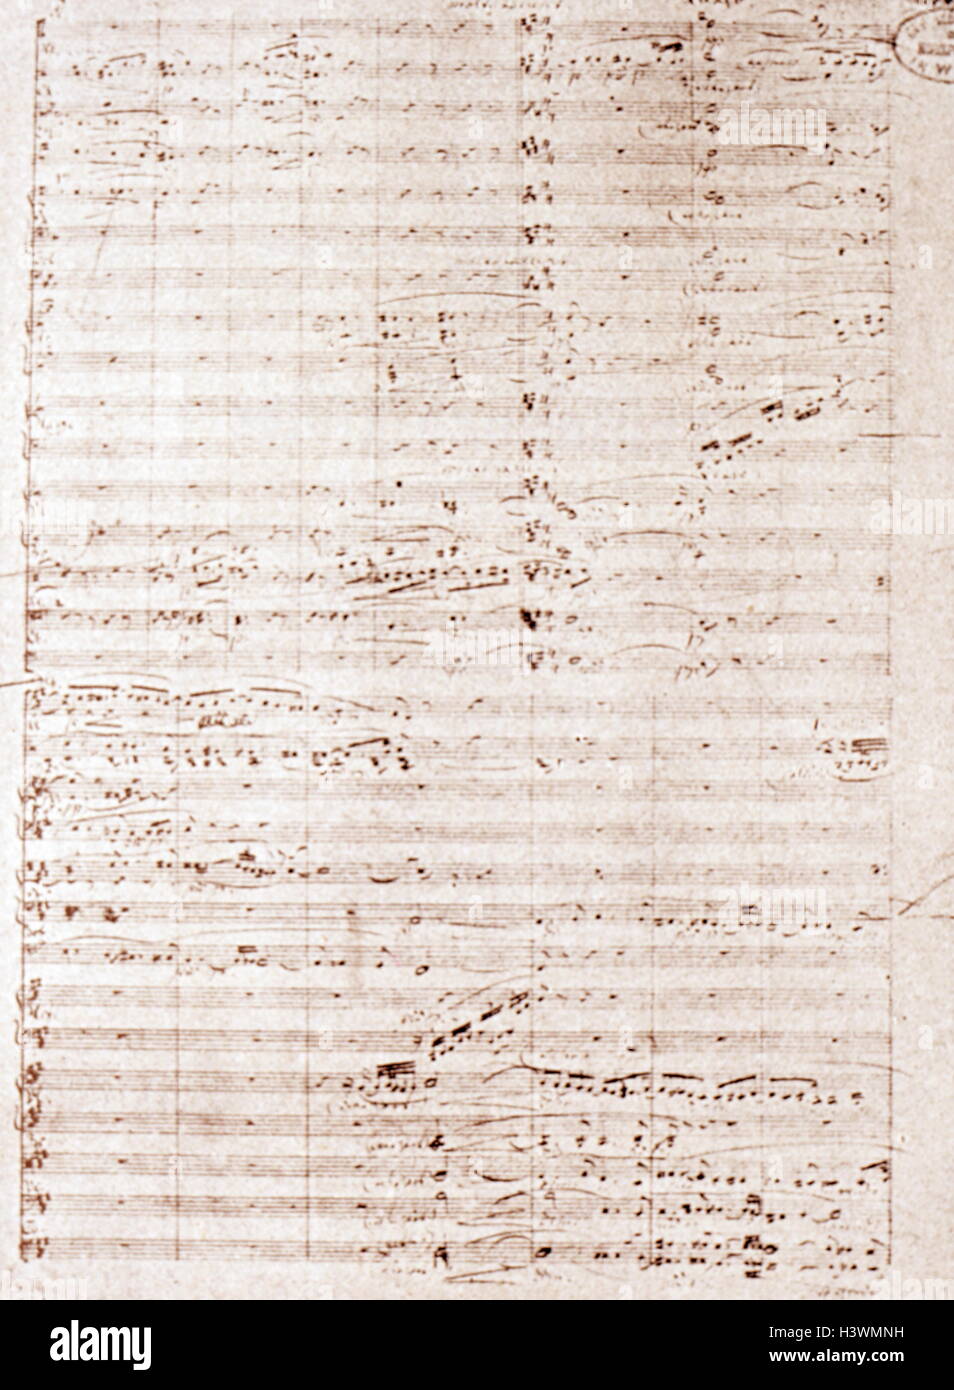 Partituras para la ópera Tristan und Isolde de Richard Wagner (1813-1883), un compositor alemán, director de teatro, polemista y conductor. Fecha del siglo XIX Foto de stock